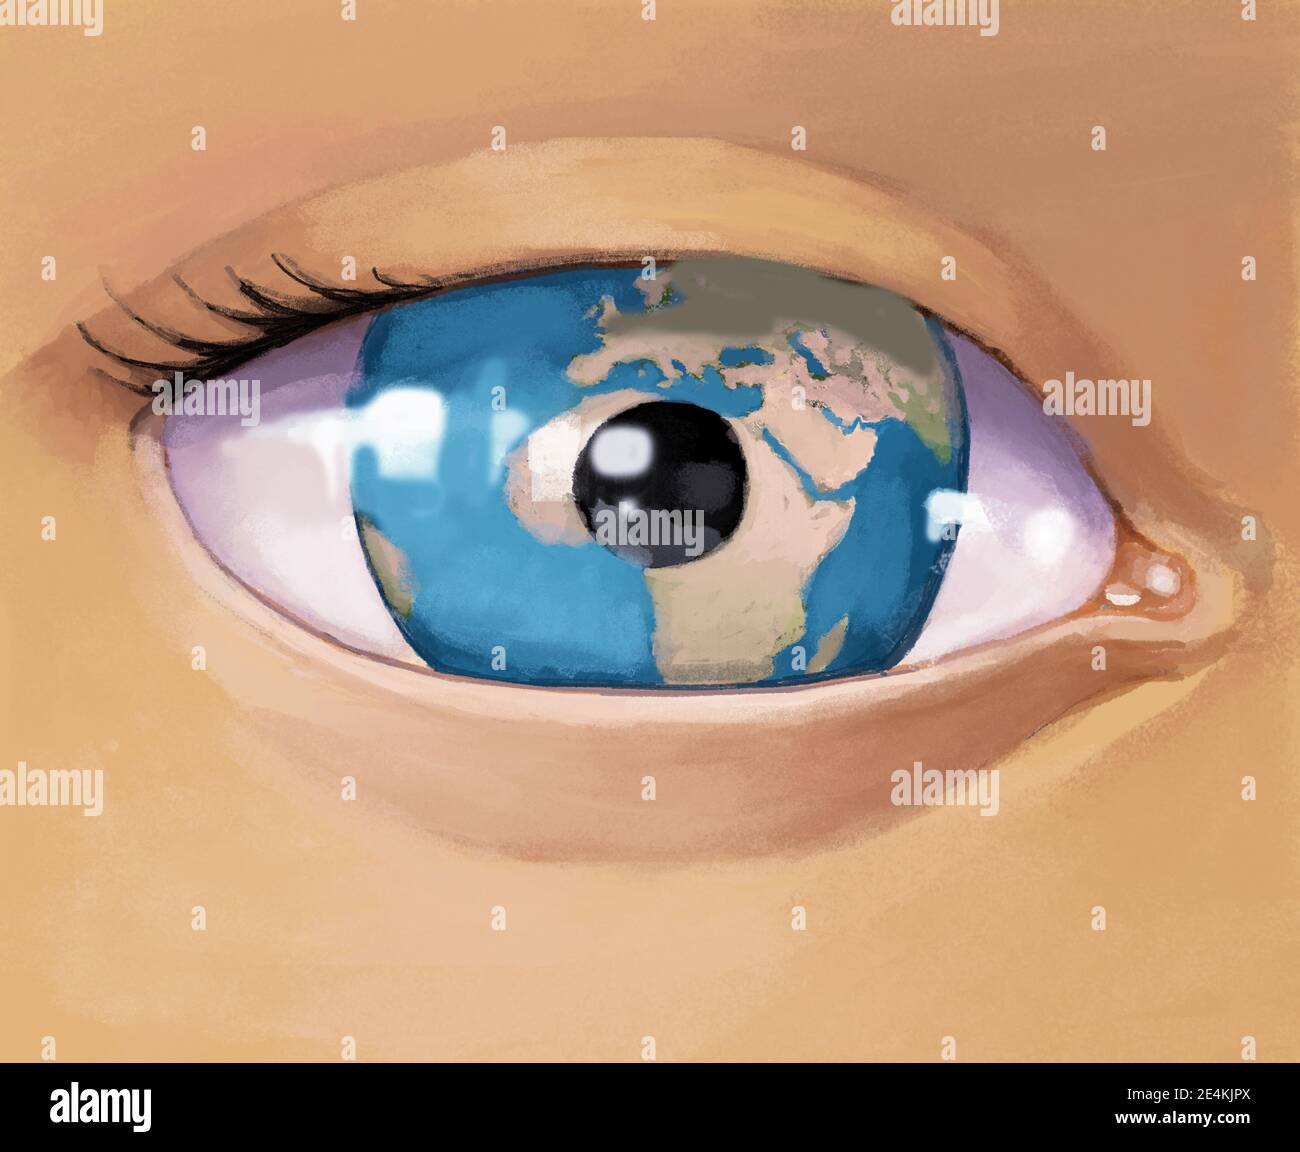 de cerca de un ojo yhe iris está hecho de un mundo curioso mirada metaphr surrealista ilustración digital Foto de stock